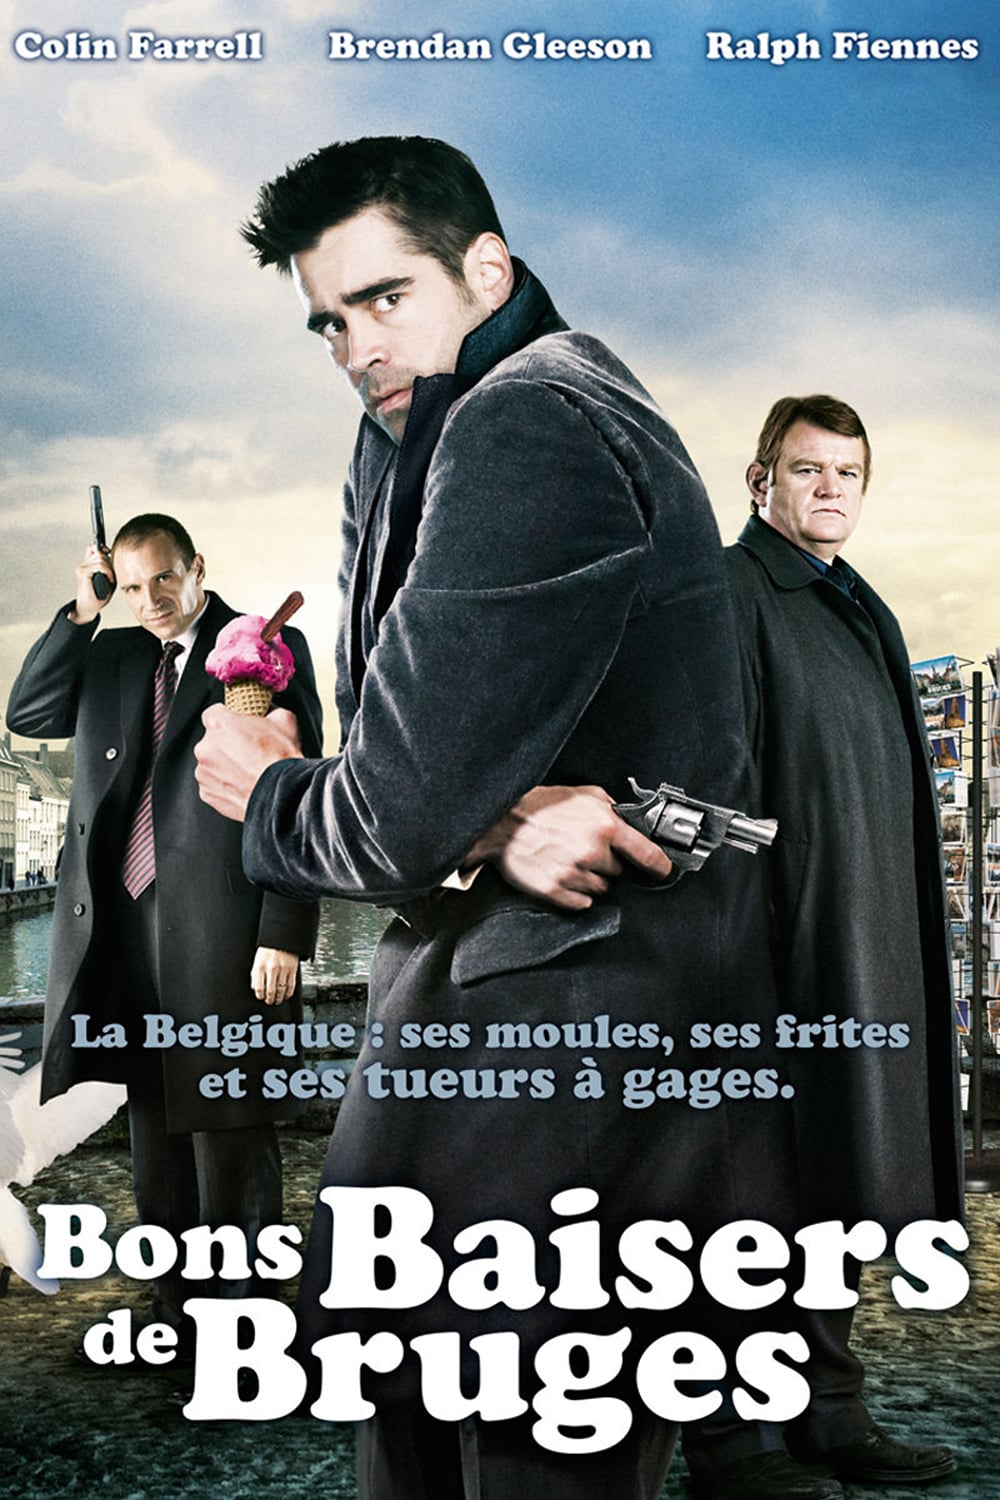 Affiche du film "Bons baisers de Bruges"